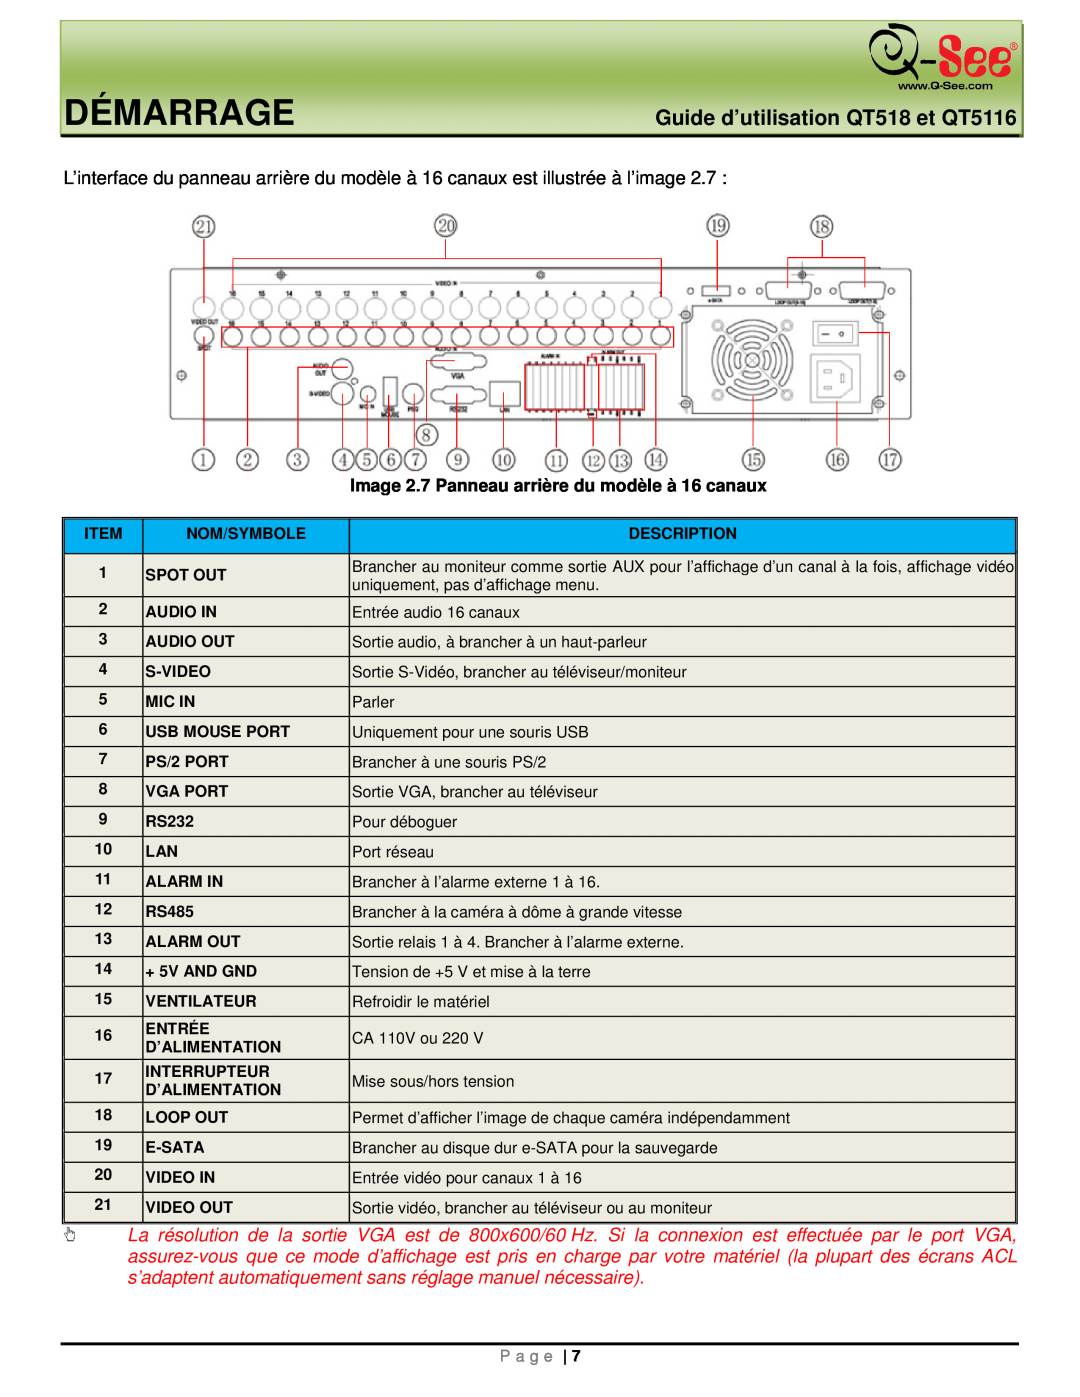 Q-See manual Démarrage, Guide d’utilisation QT518 et QT5116, Image 2.7 Panneau arrière du modèle à 16 canaux, P a g e 